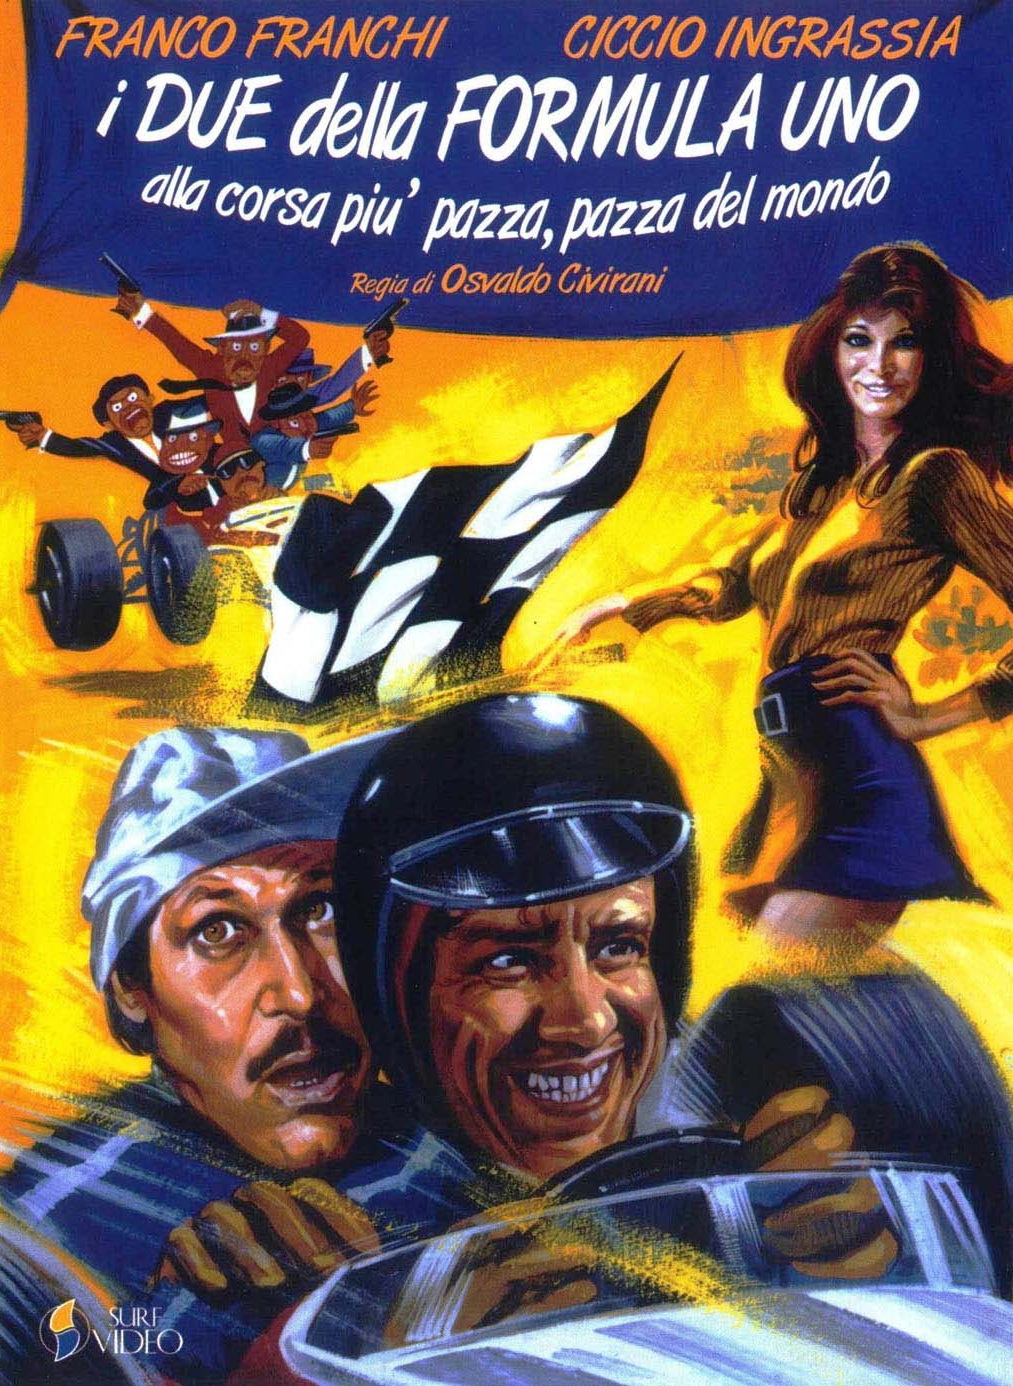 I due della F.1 alla corsa più pazza, pazza del mondo (1971) Screenshot 5